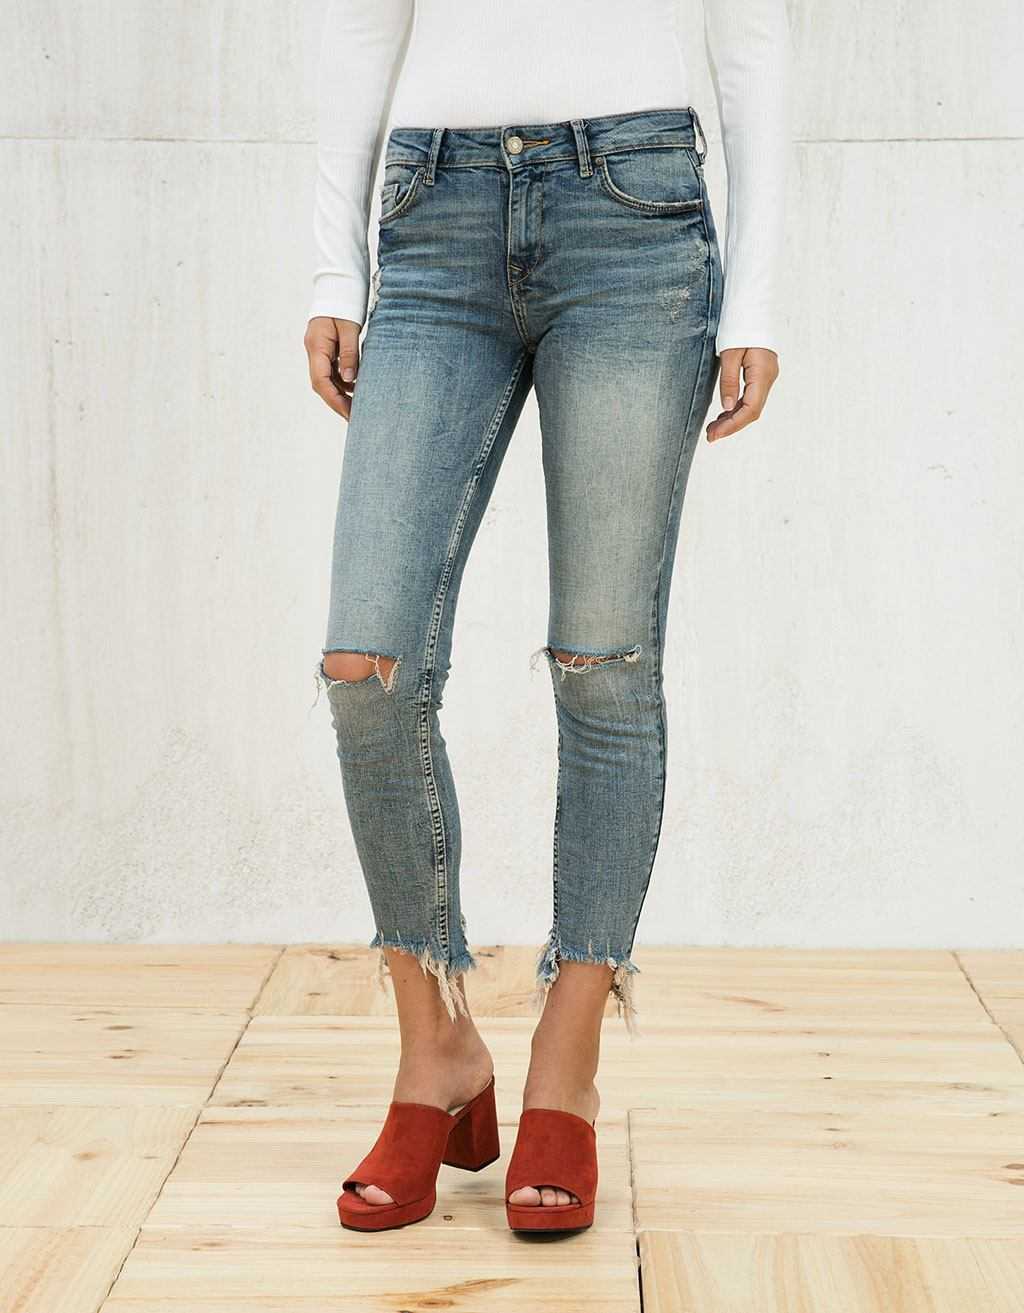 Как обрезать джинсы внизу по-модному, распушить с бахромой, необработанными краями с фото пошагово в домашних условиях